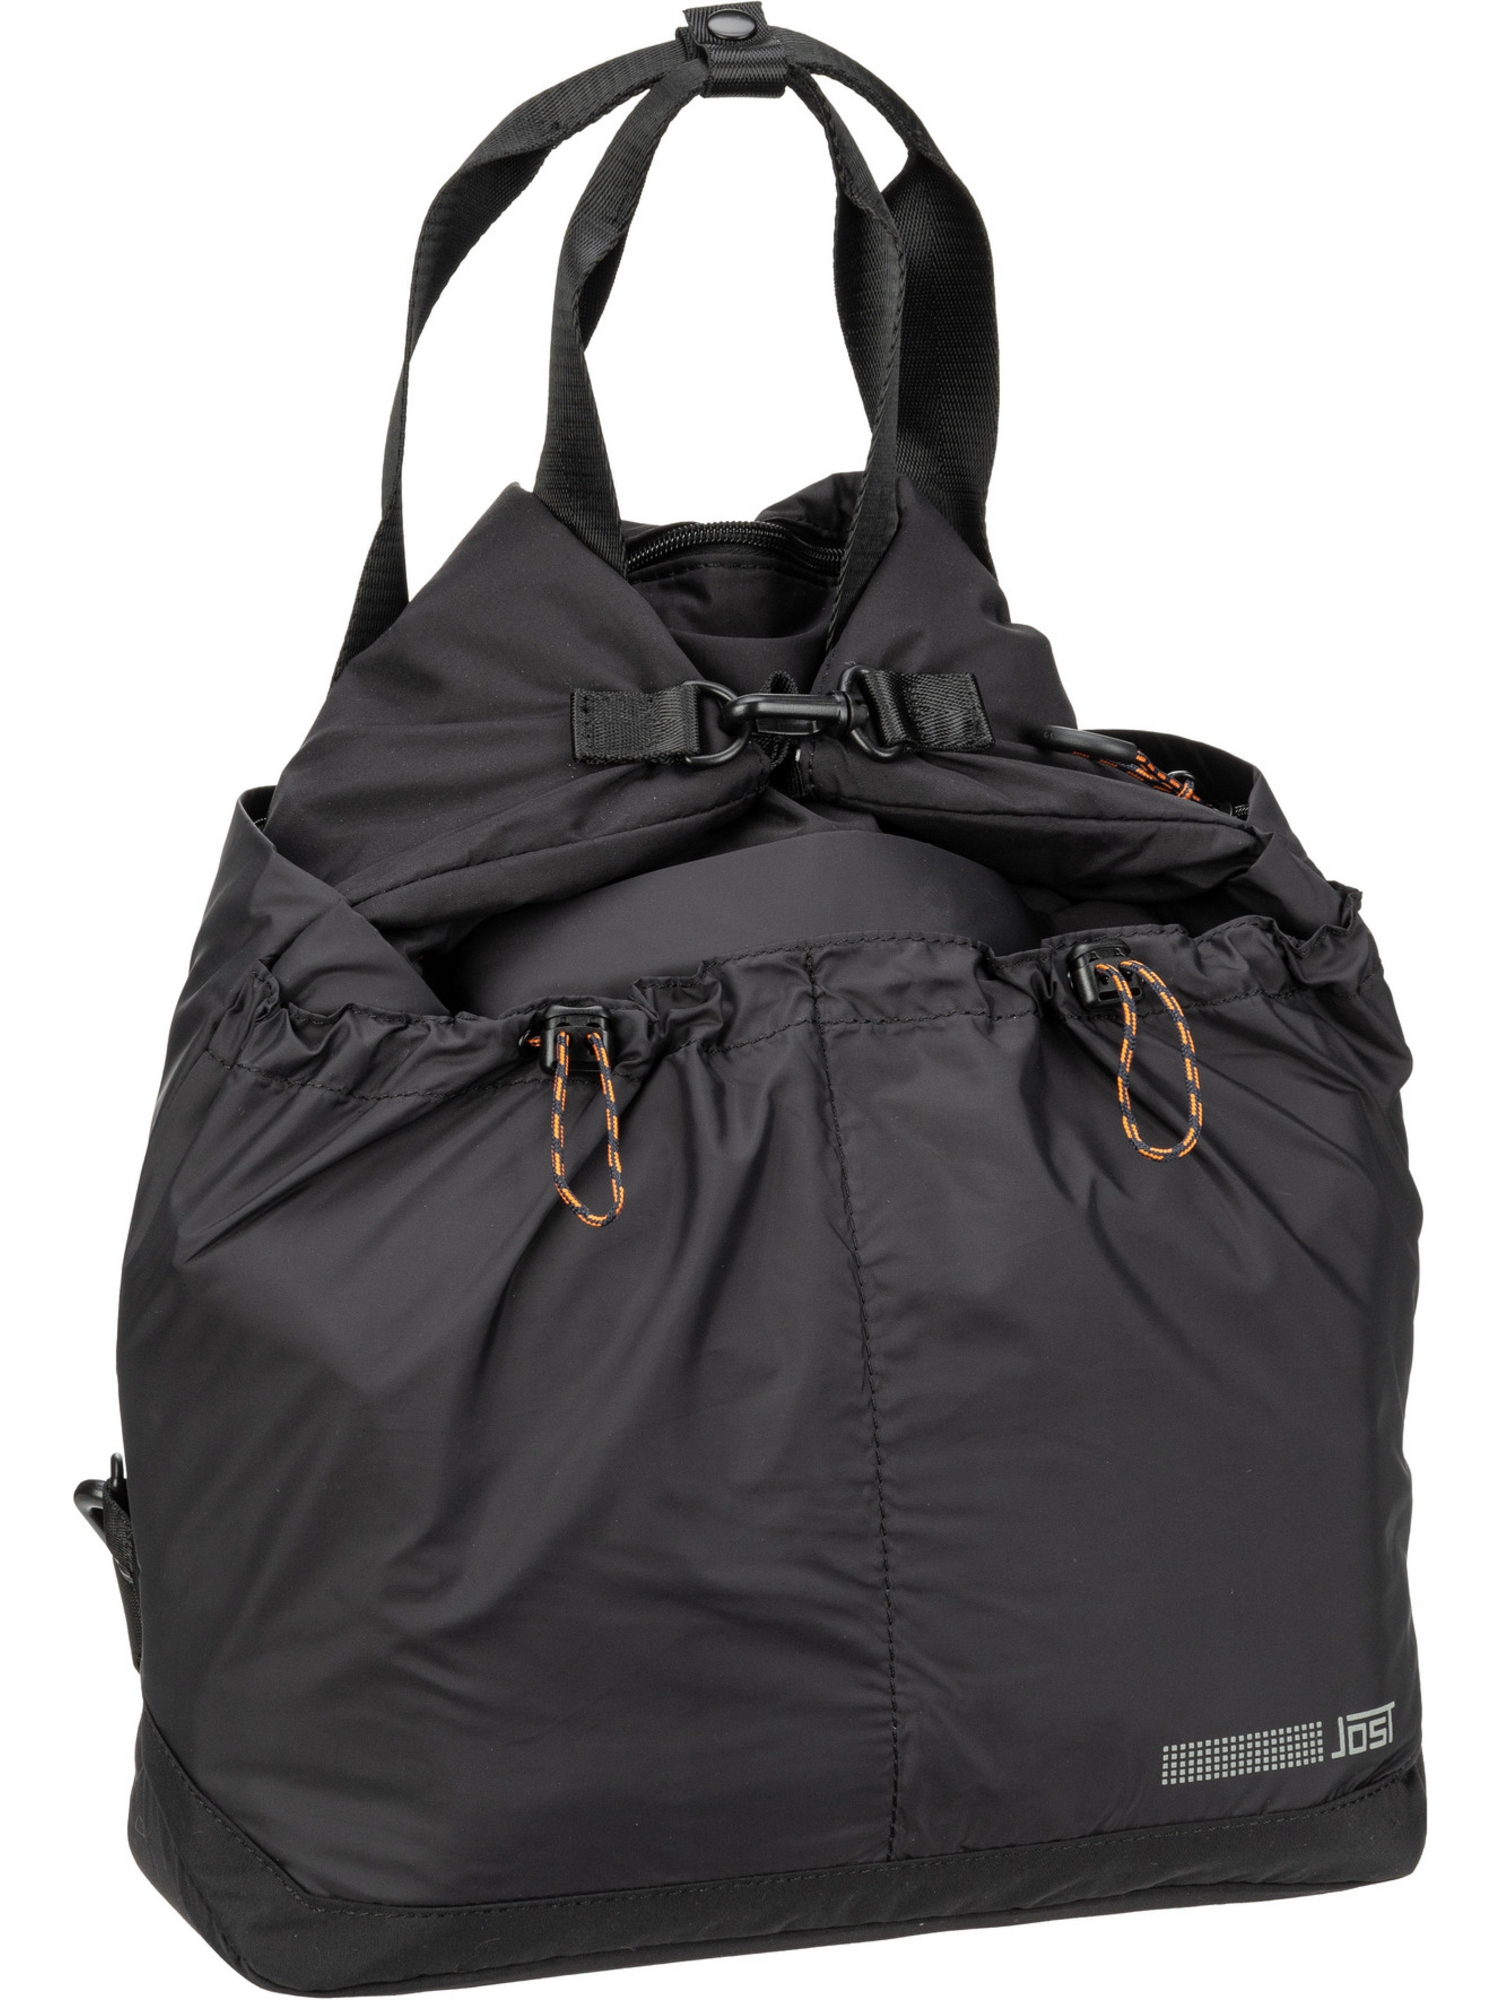 Рюкзак Jost/Backpack Lohja X Change Bag S, черный